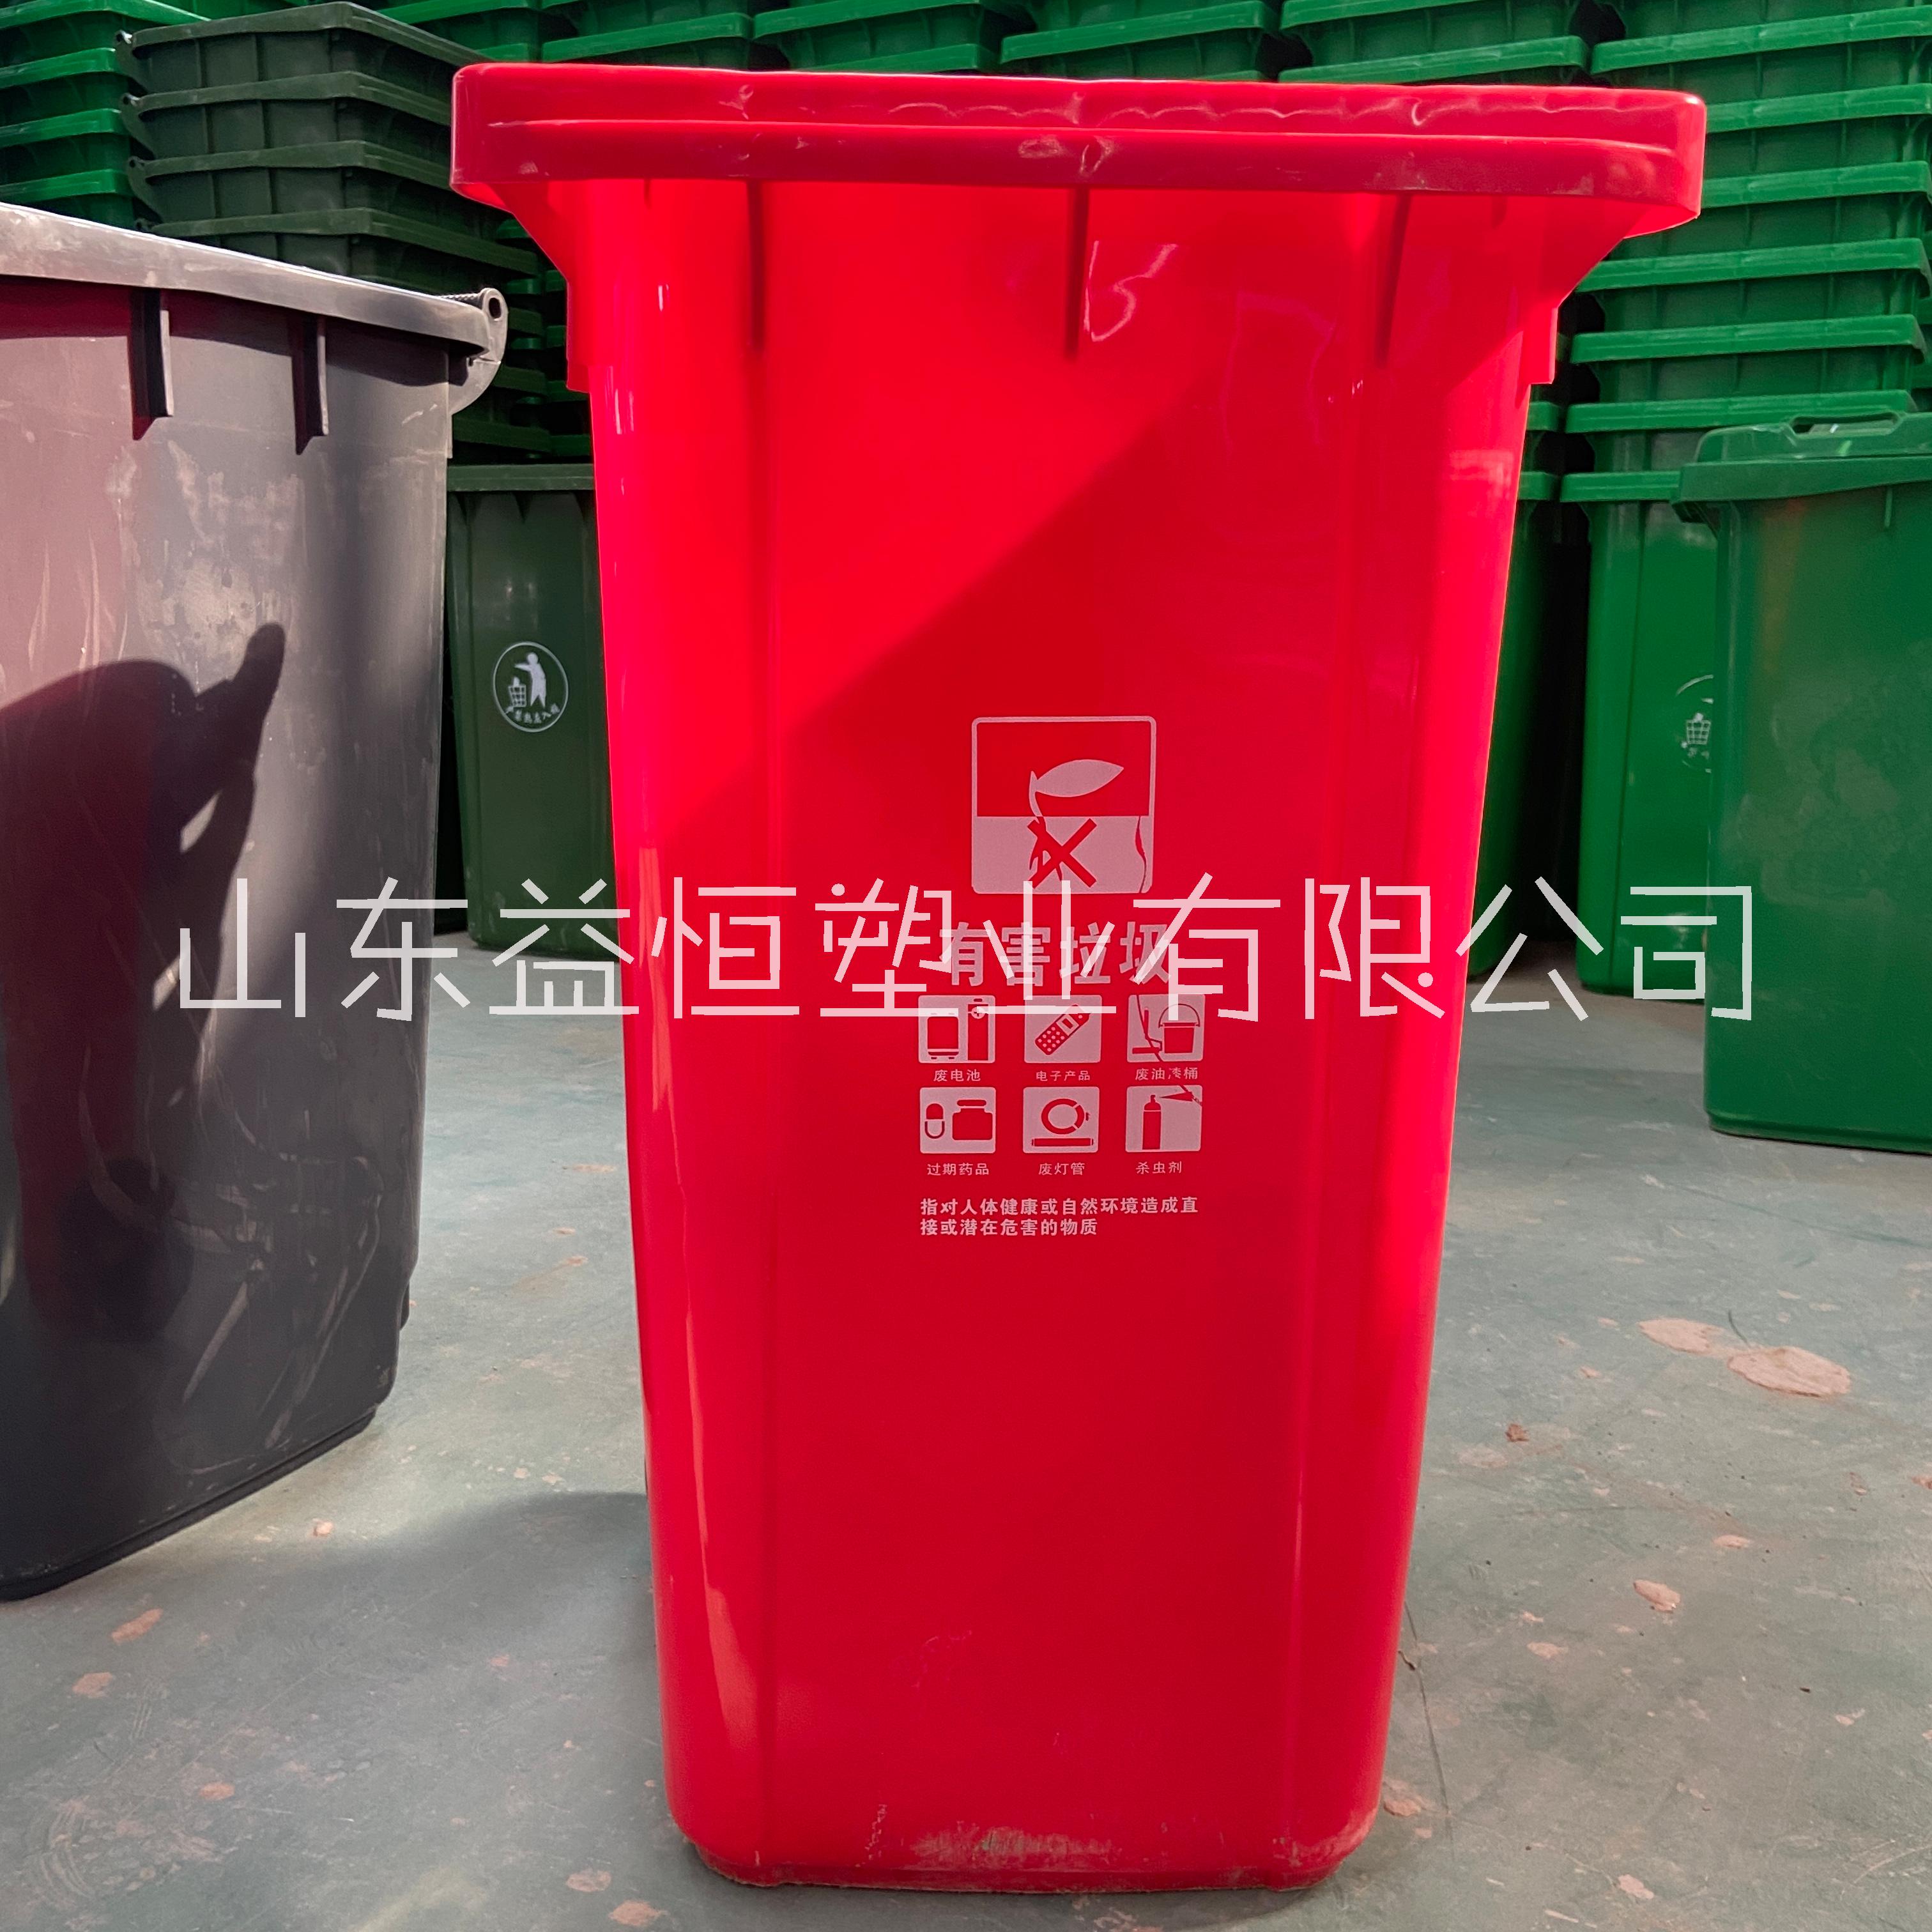 脚踏式垃圾桶型号齐全 山东益恒厂家专业生产环卫垃圾桶图片